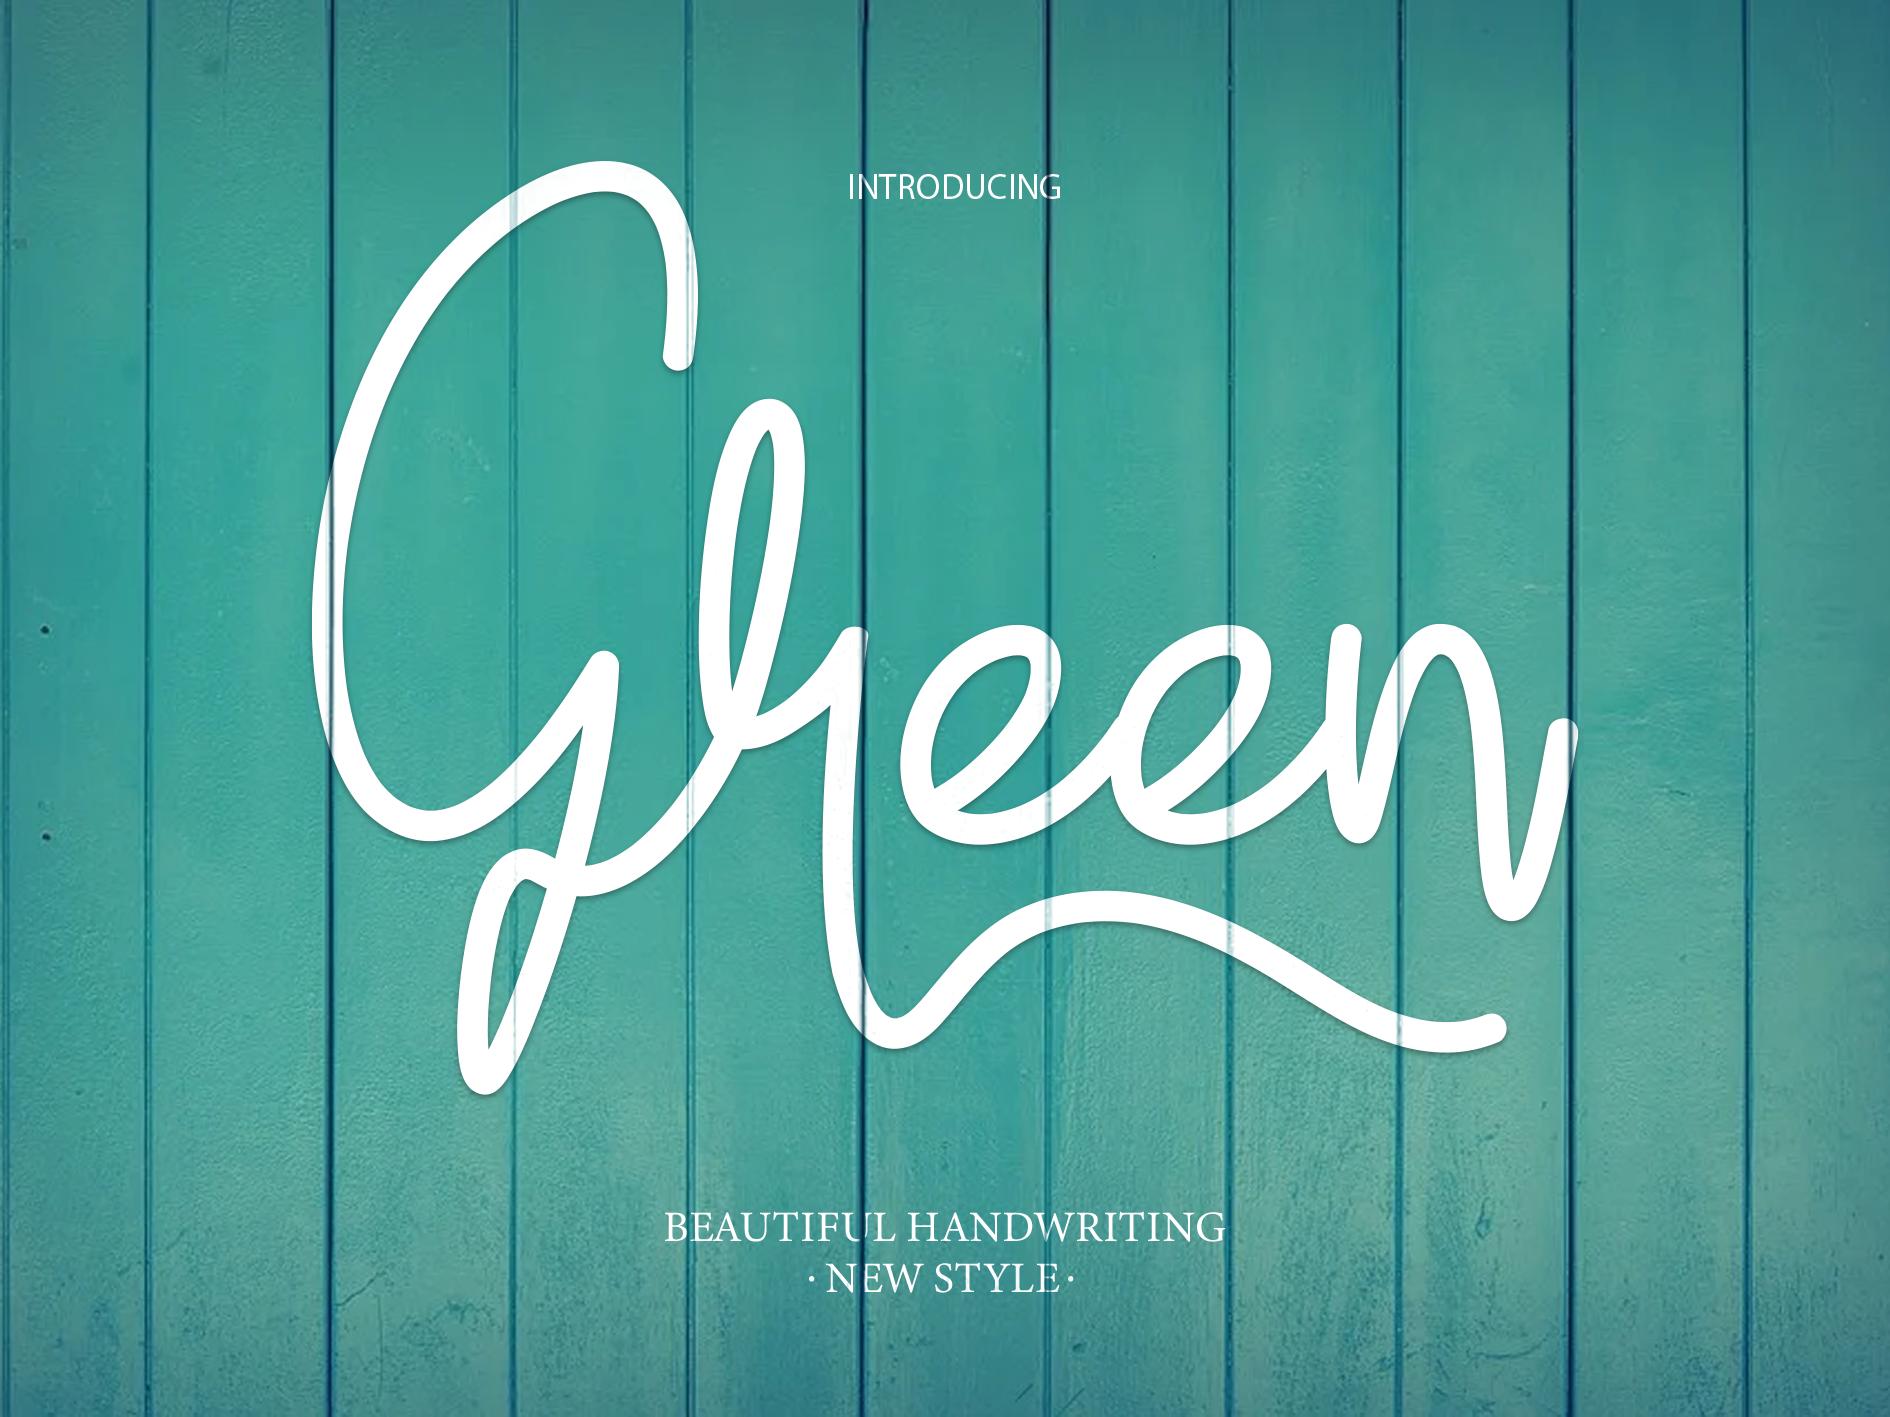 Green Font